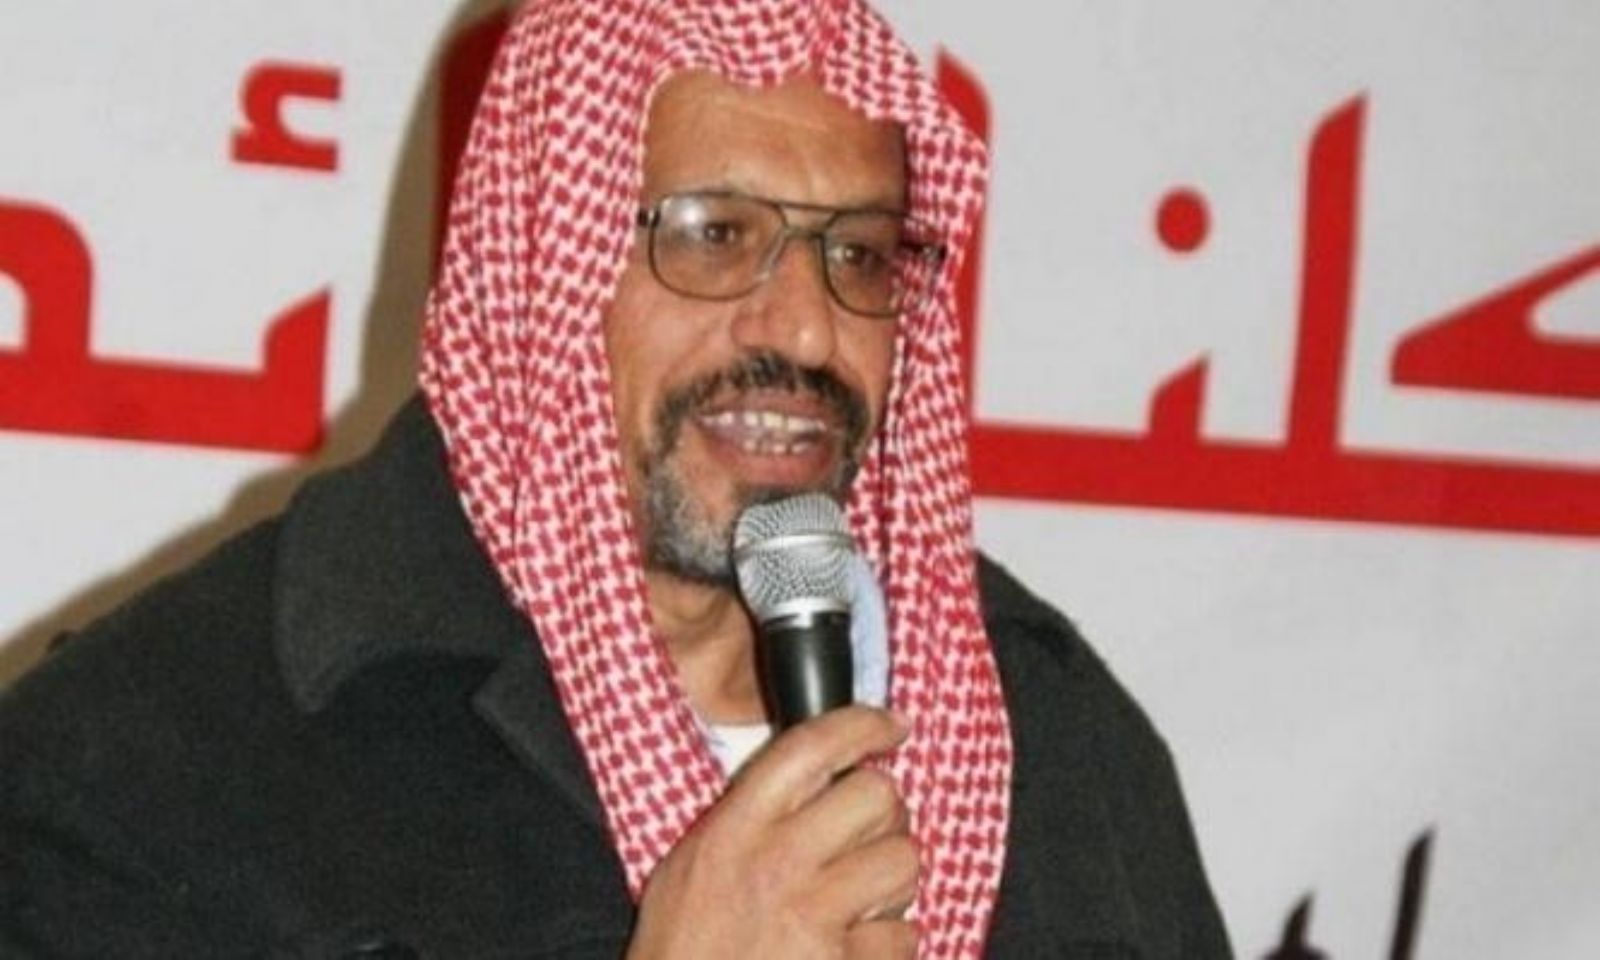 اعتقال الشيخ يوسف الباز: المحكمة ترجئ قرارها بشأن طلب النيابة تمديد الاعتقال حتى نهاية الإجراءات القضائية إلى يوم الأحد المقبل